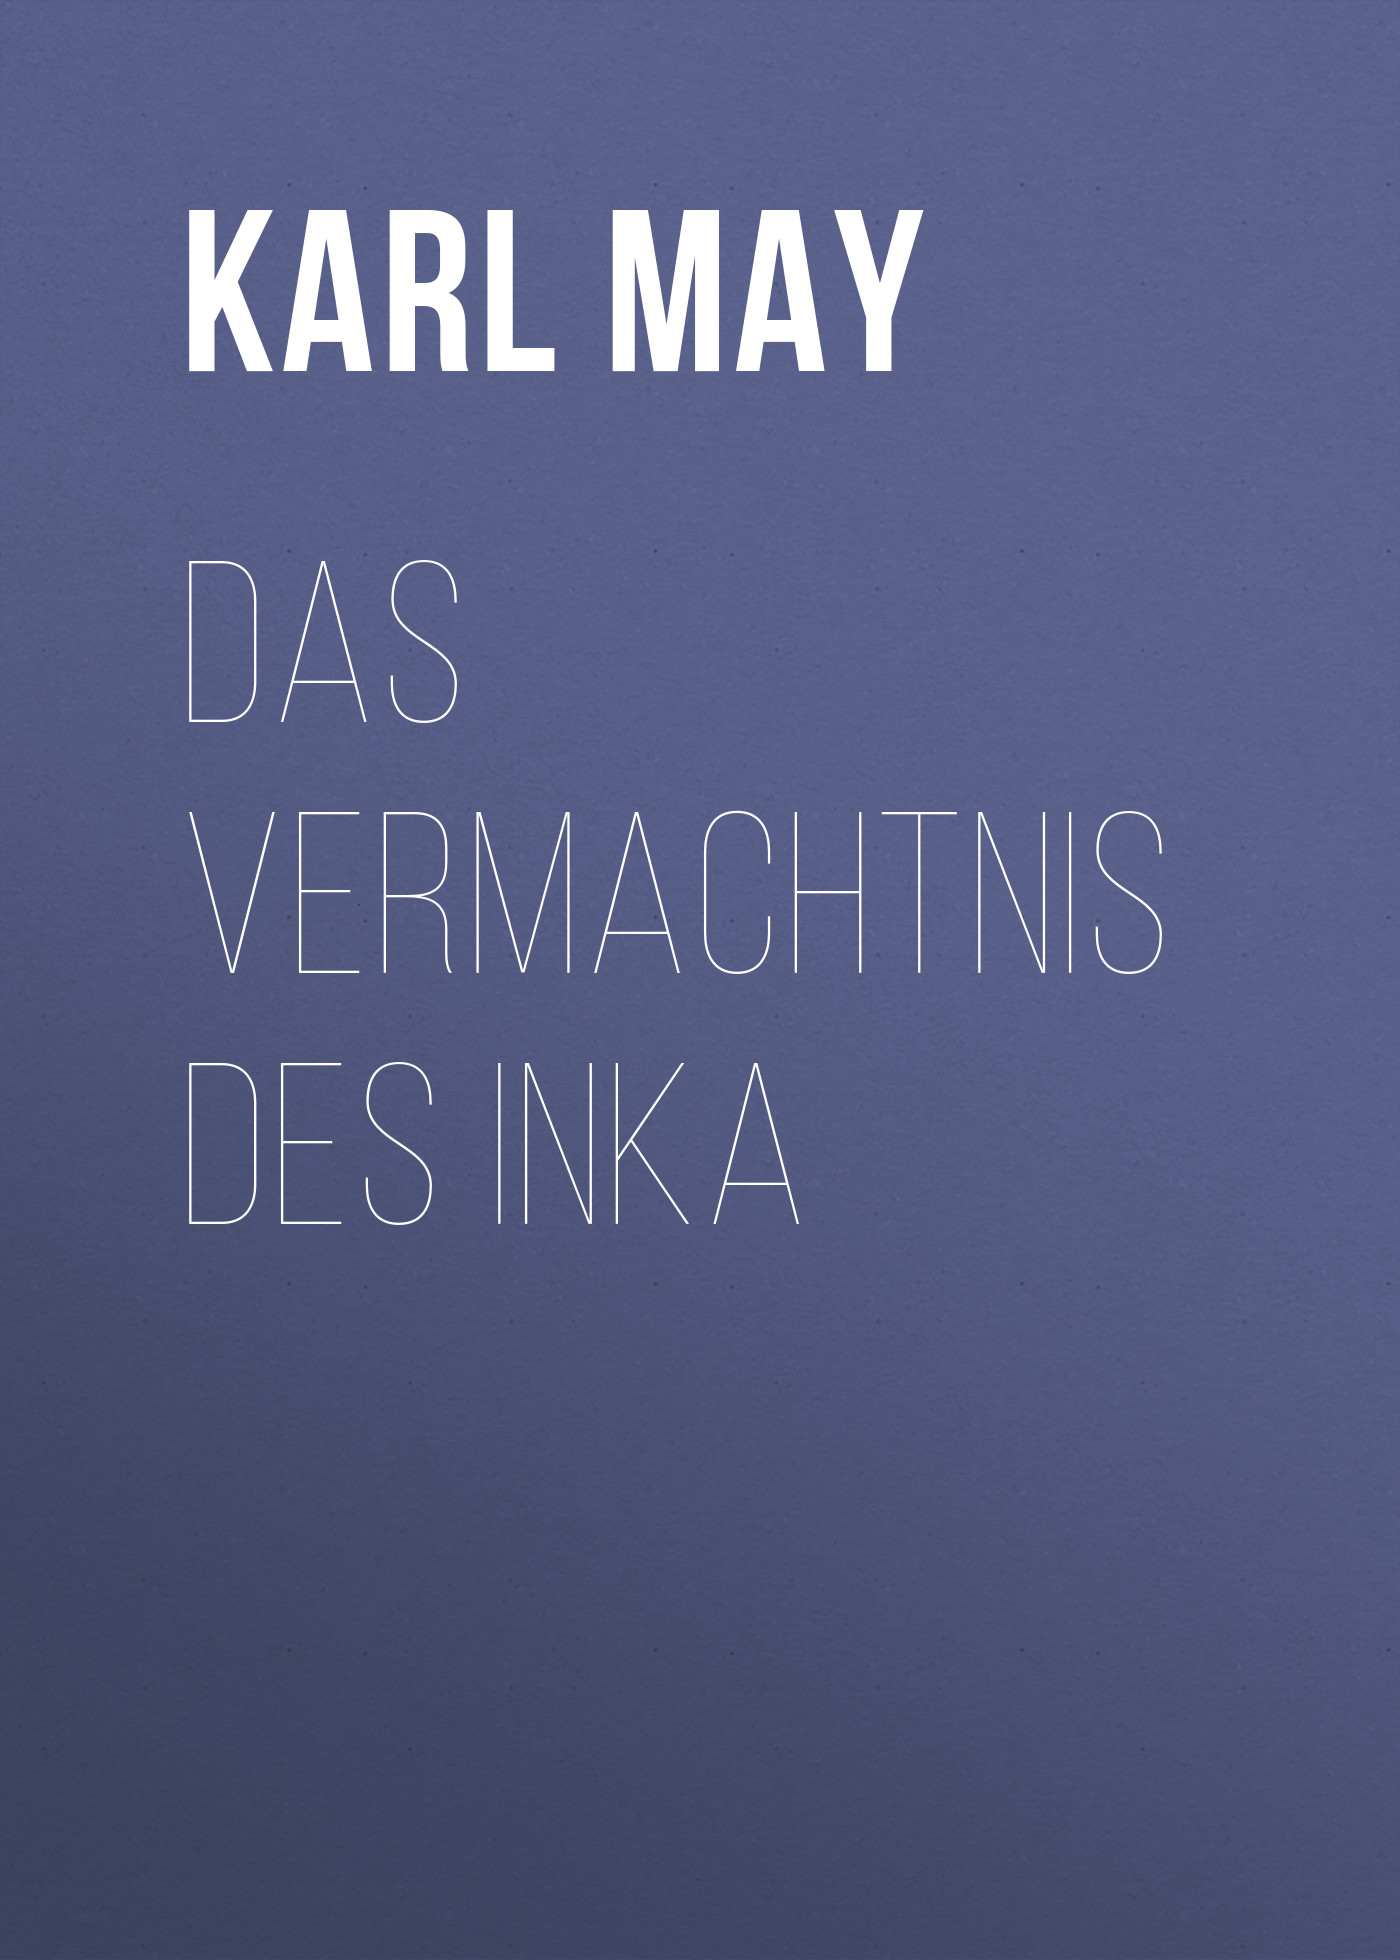 Книга Das Vermachtnis des Inka из серии , созданная Karl May, может относится к жанру Зарубежная классика. Стоимость электронной книги Das Vermachtnis des Inka с идентификатором 48631652 составляет 0 руб.